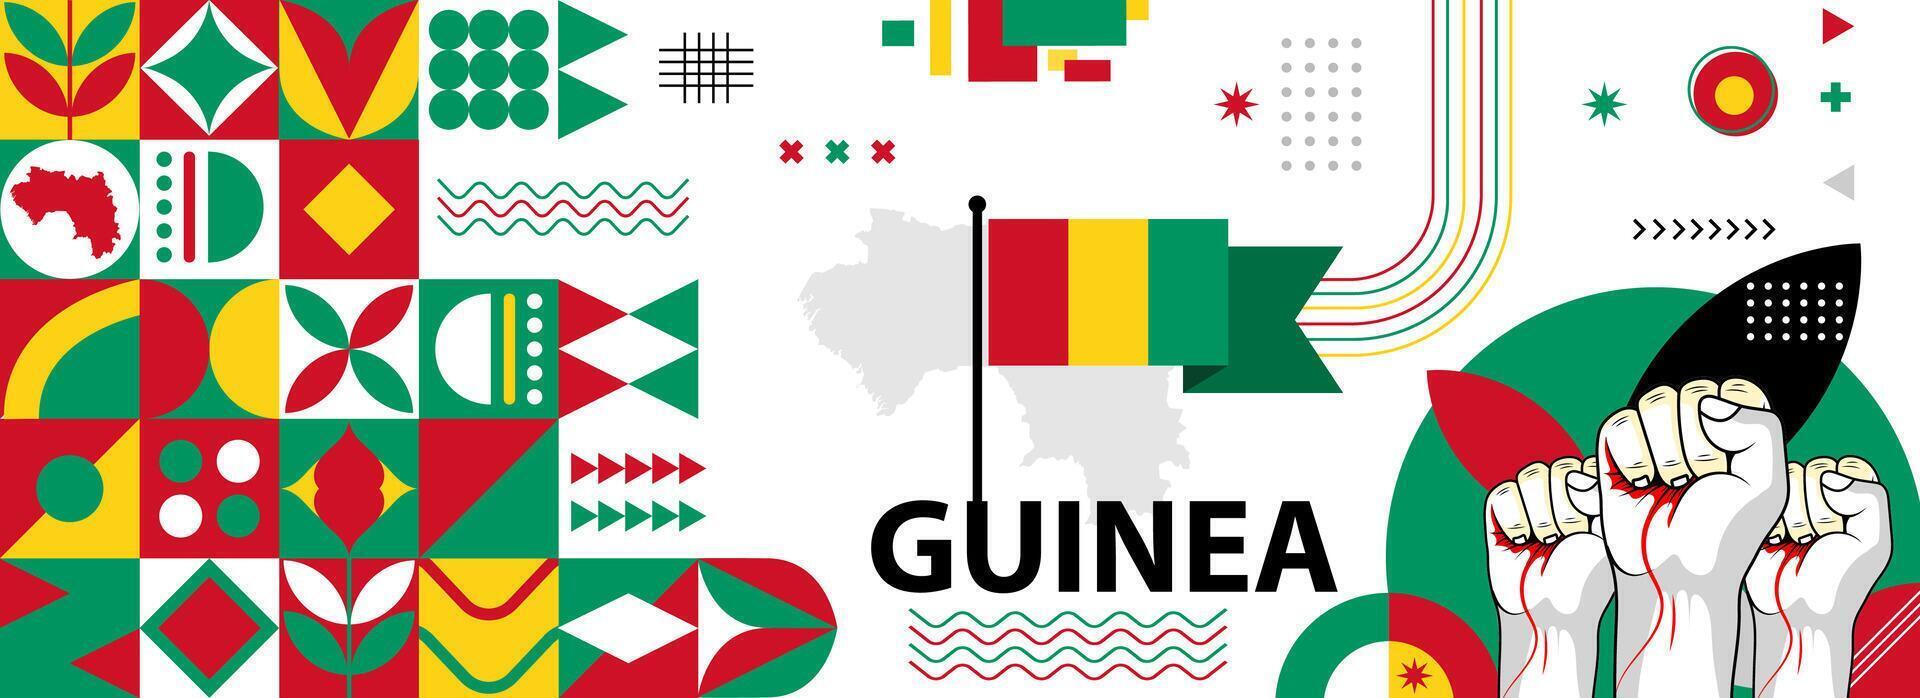 Guinea National oder Unabhängigkeit Tag Banner zum Land Feier. Flagge und Karte von Guinea mit angehoben Fäuste. modern retro Design mit Typorgaphie abstrakt geometrisch Symbole. Vektor Illustration